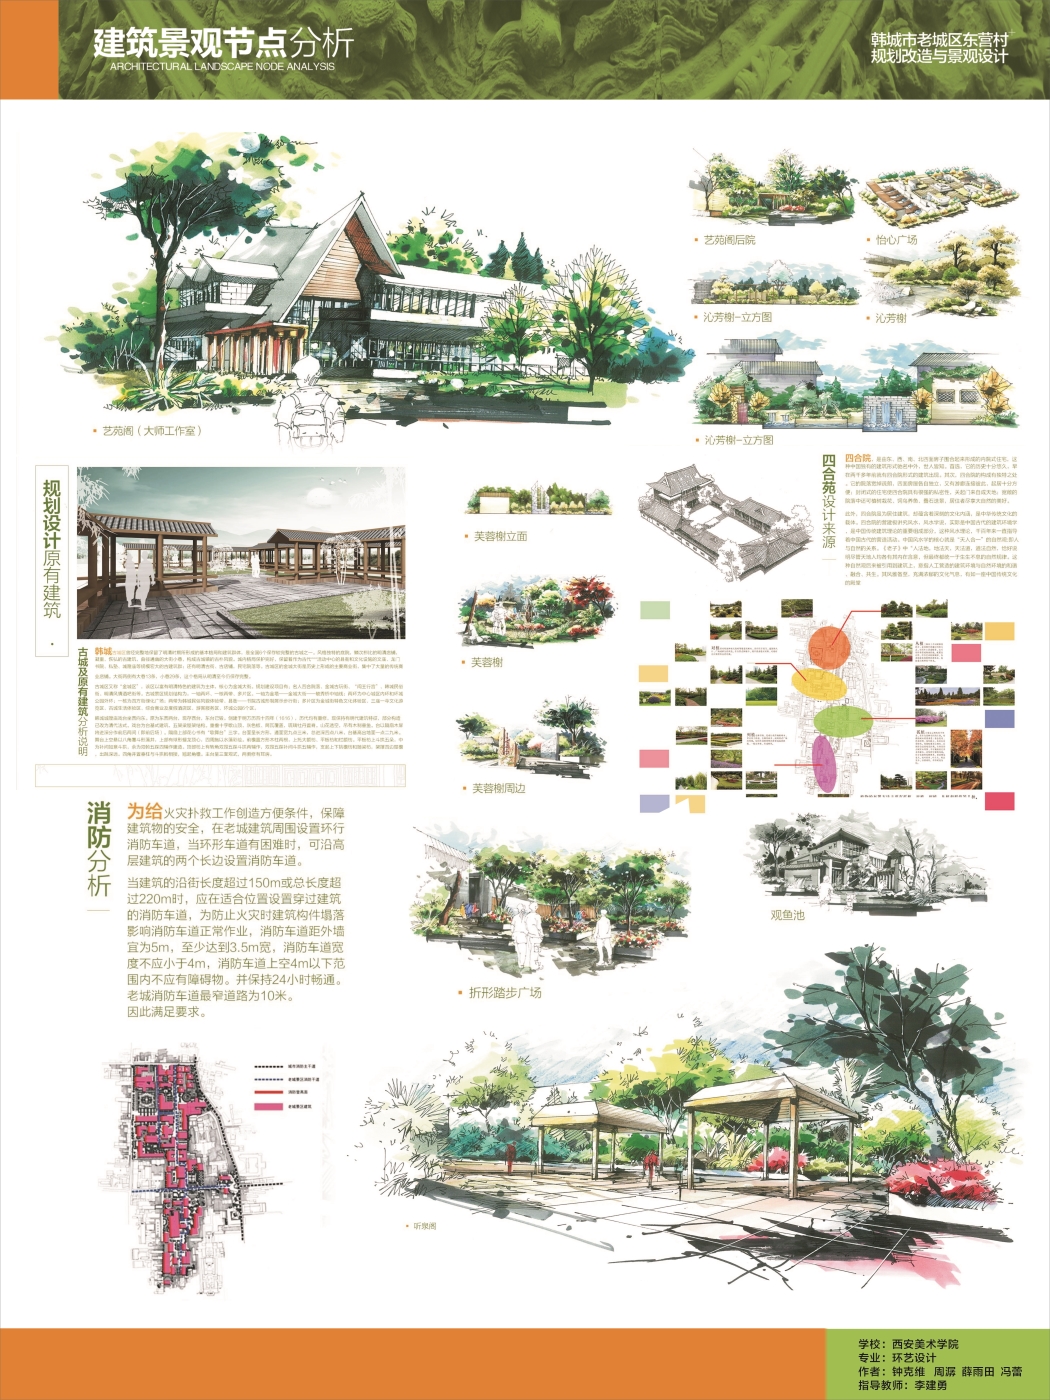 韩城市老城区东营村规划改造与景观设计-1